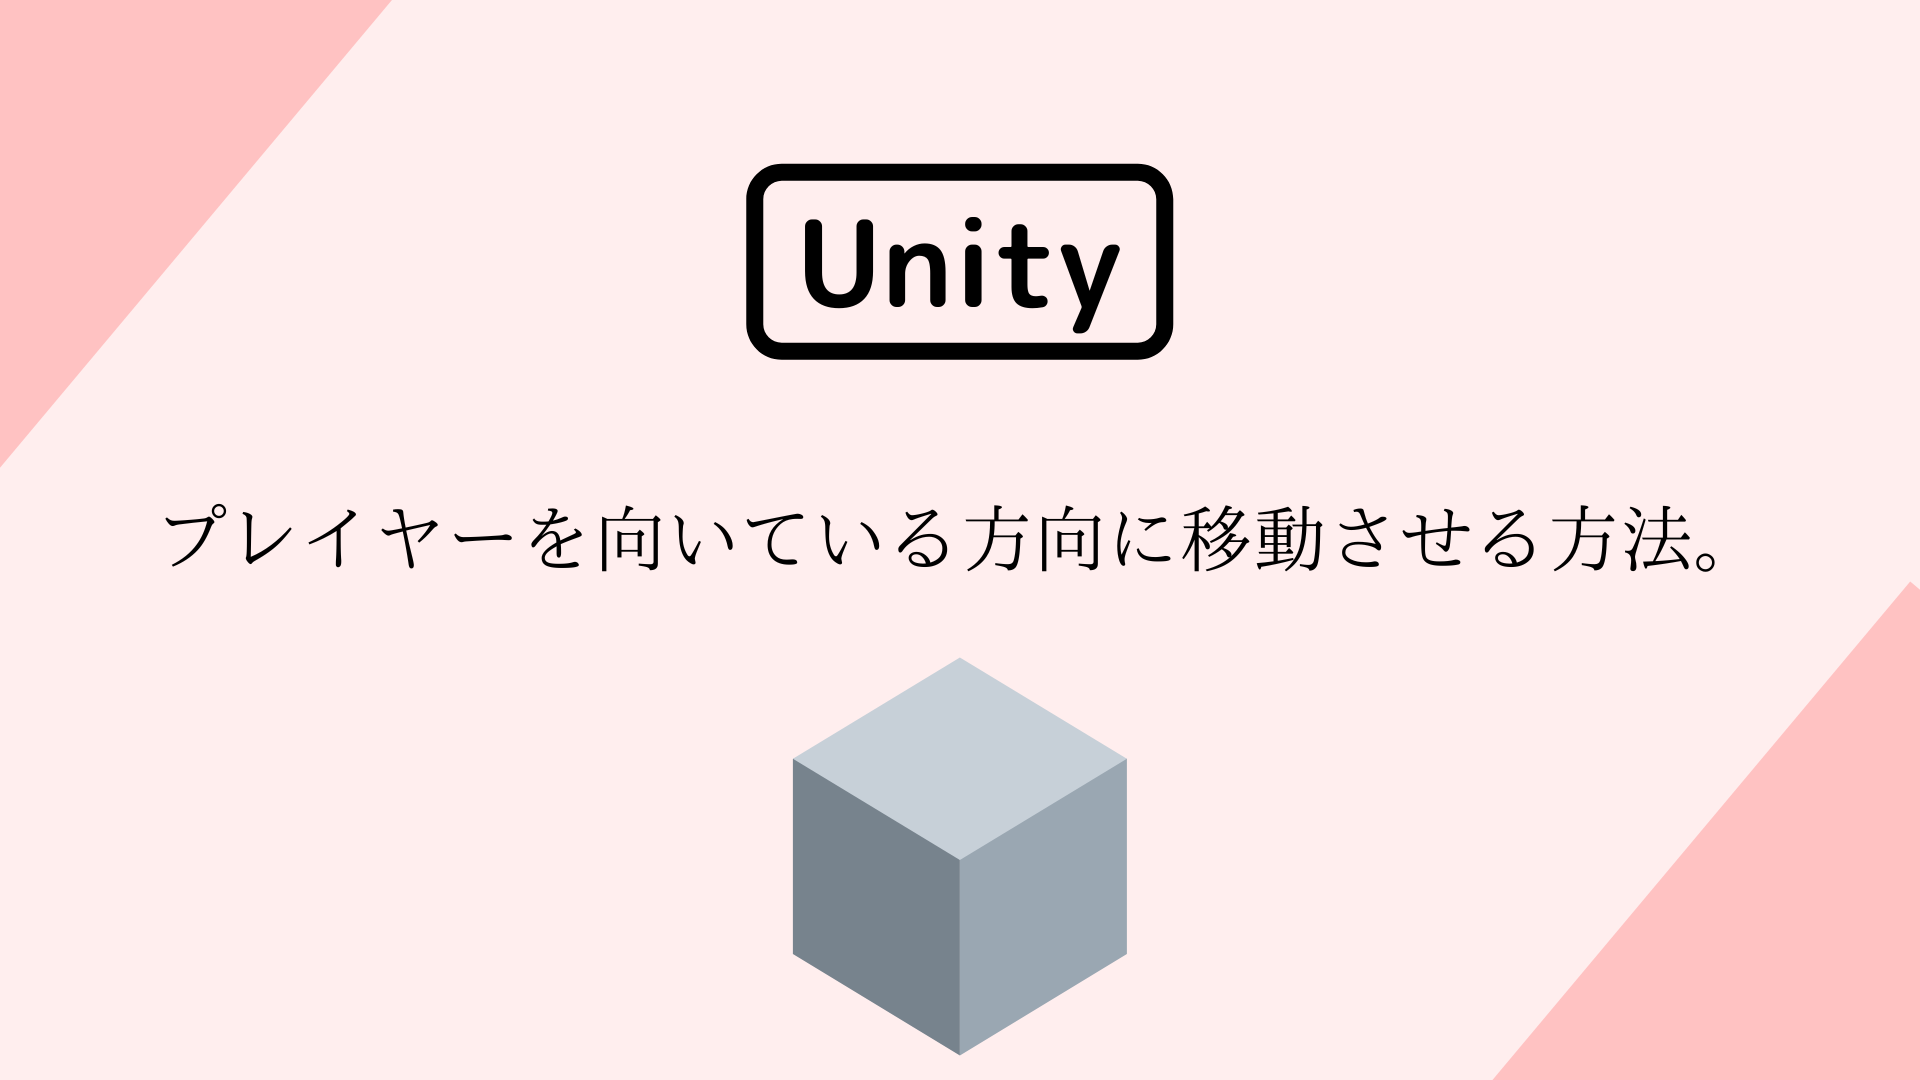 [Unity 3D] プレイヤーを向いている方向に移動させる方法。